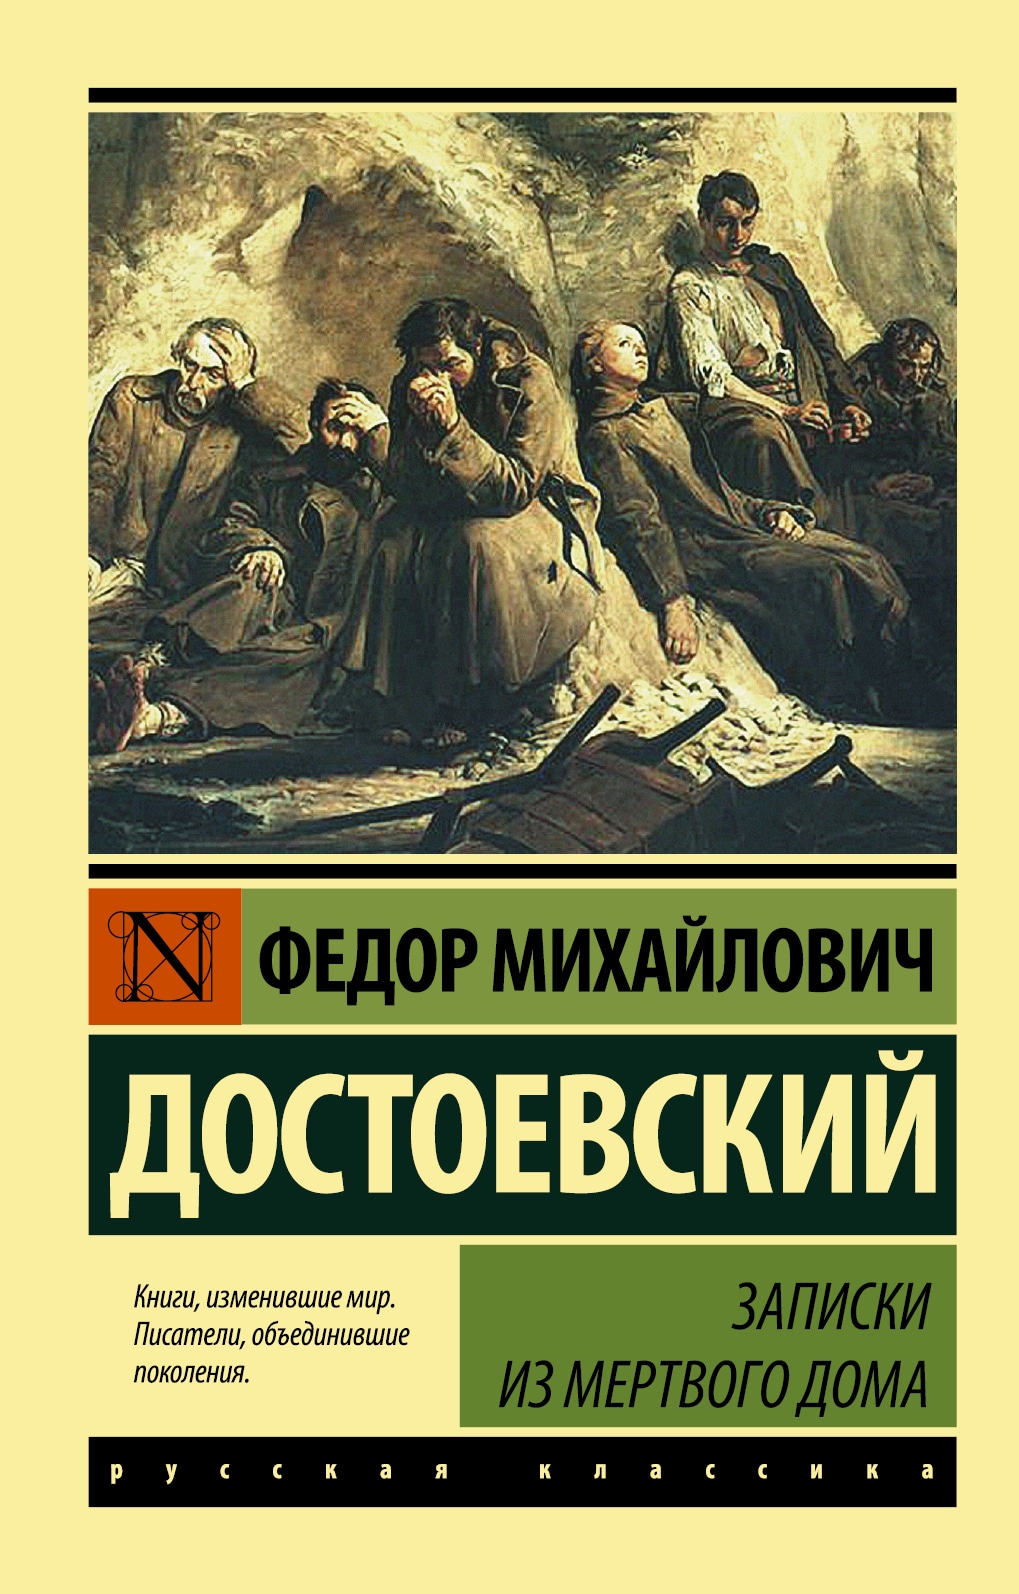 Книга «Записки из Мертвого дома» Федор Достоевский — 21 сентября 2021 г.